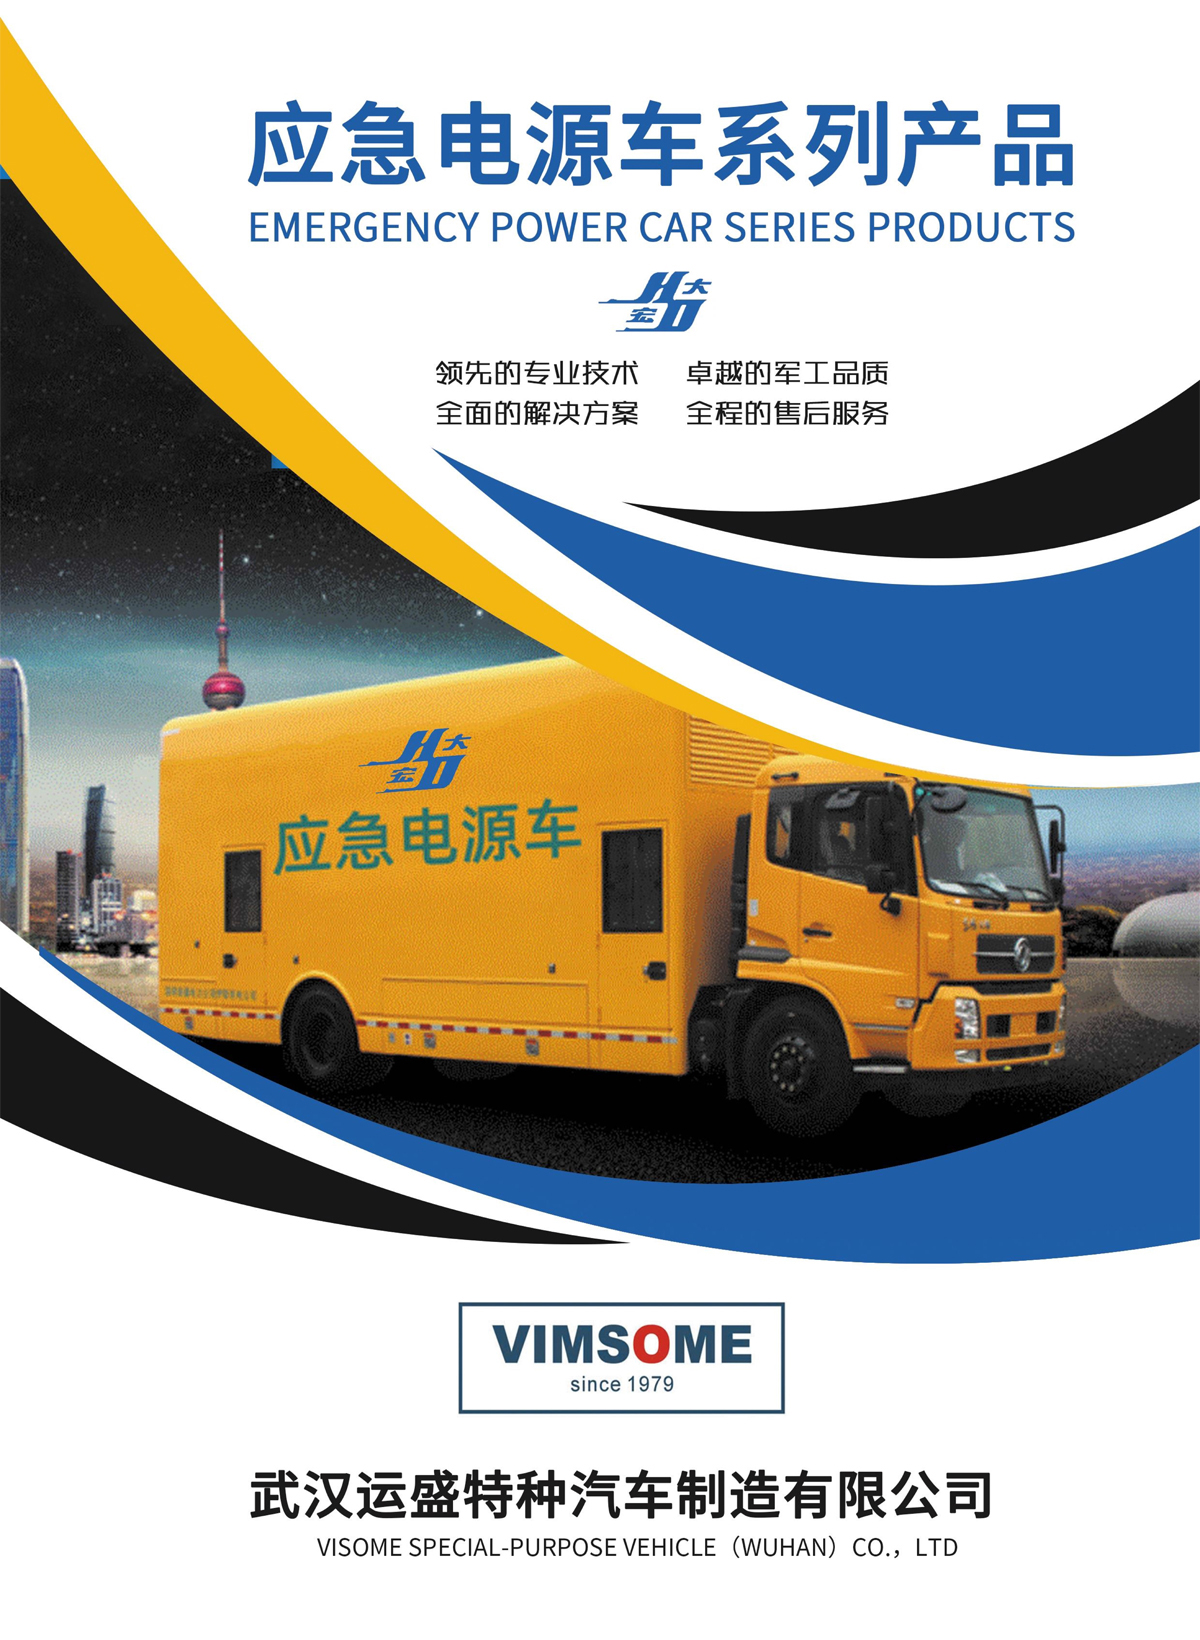 武汉运盛特汽应急电源车系列产品宣传推广手册